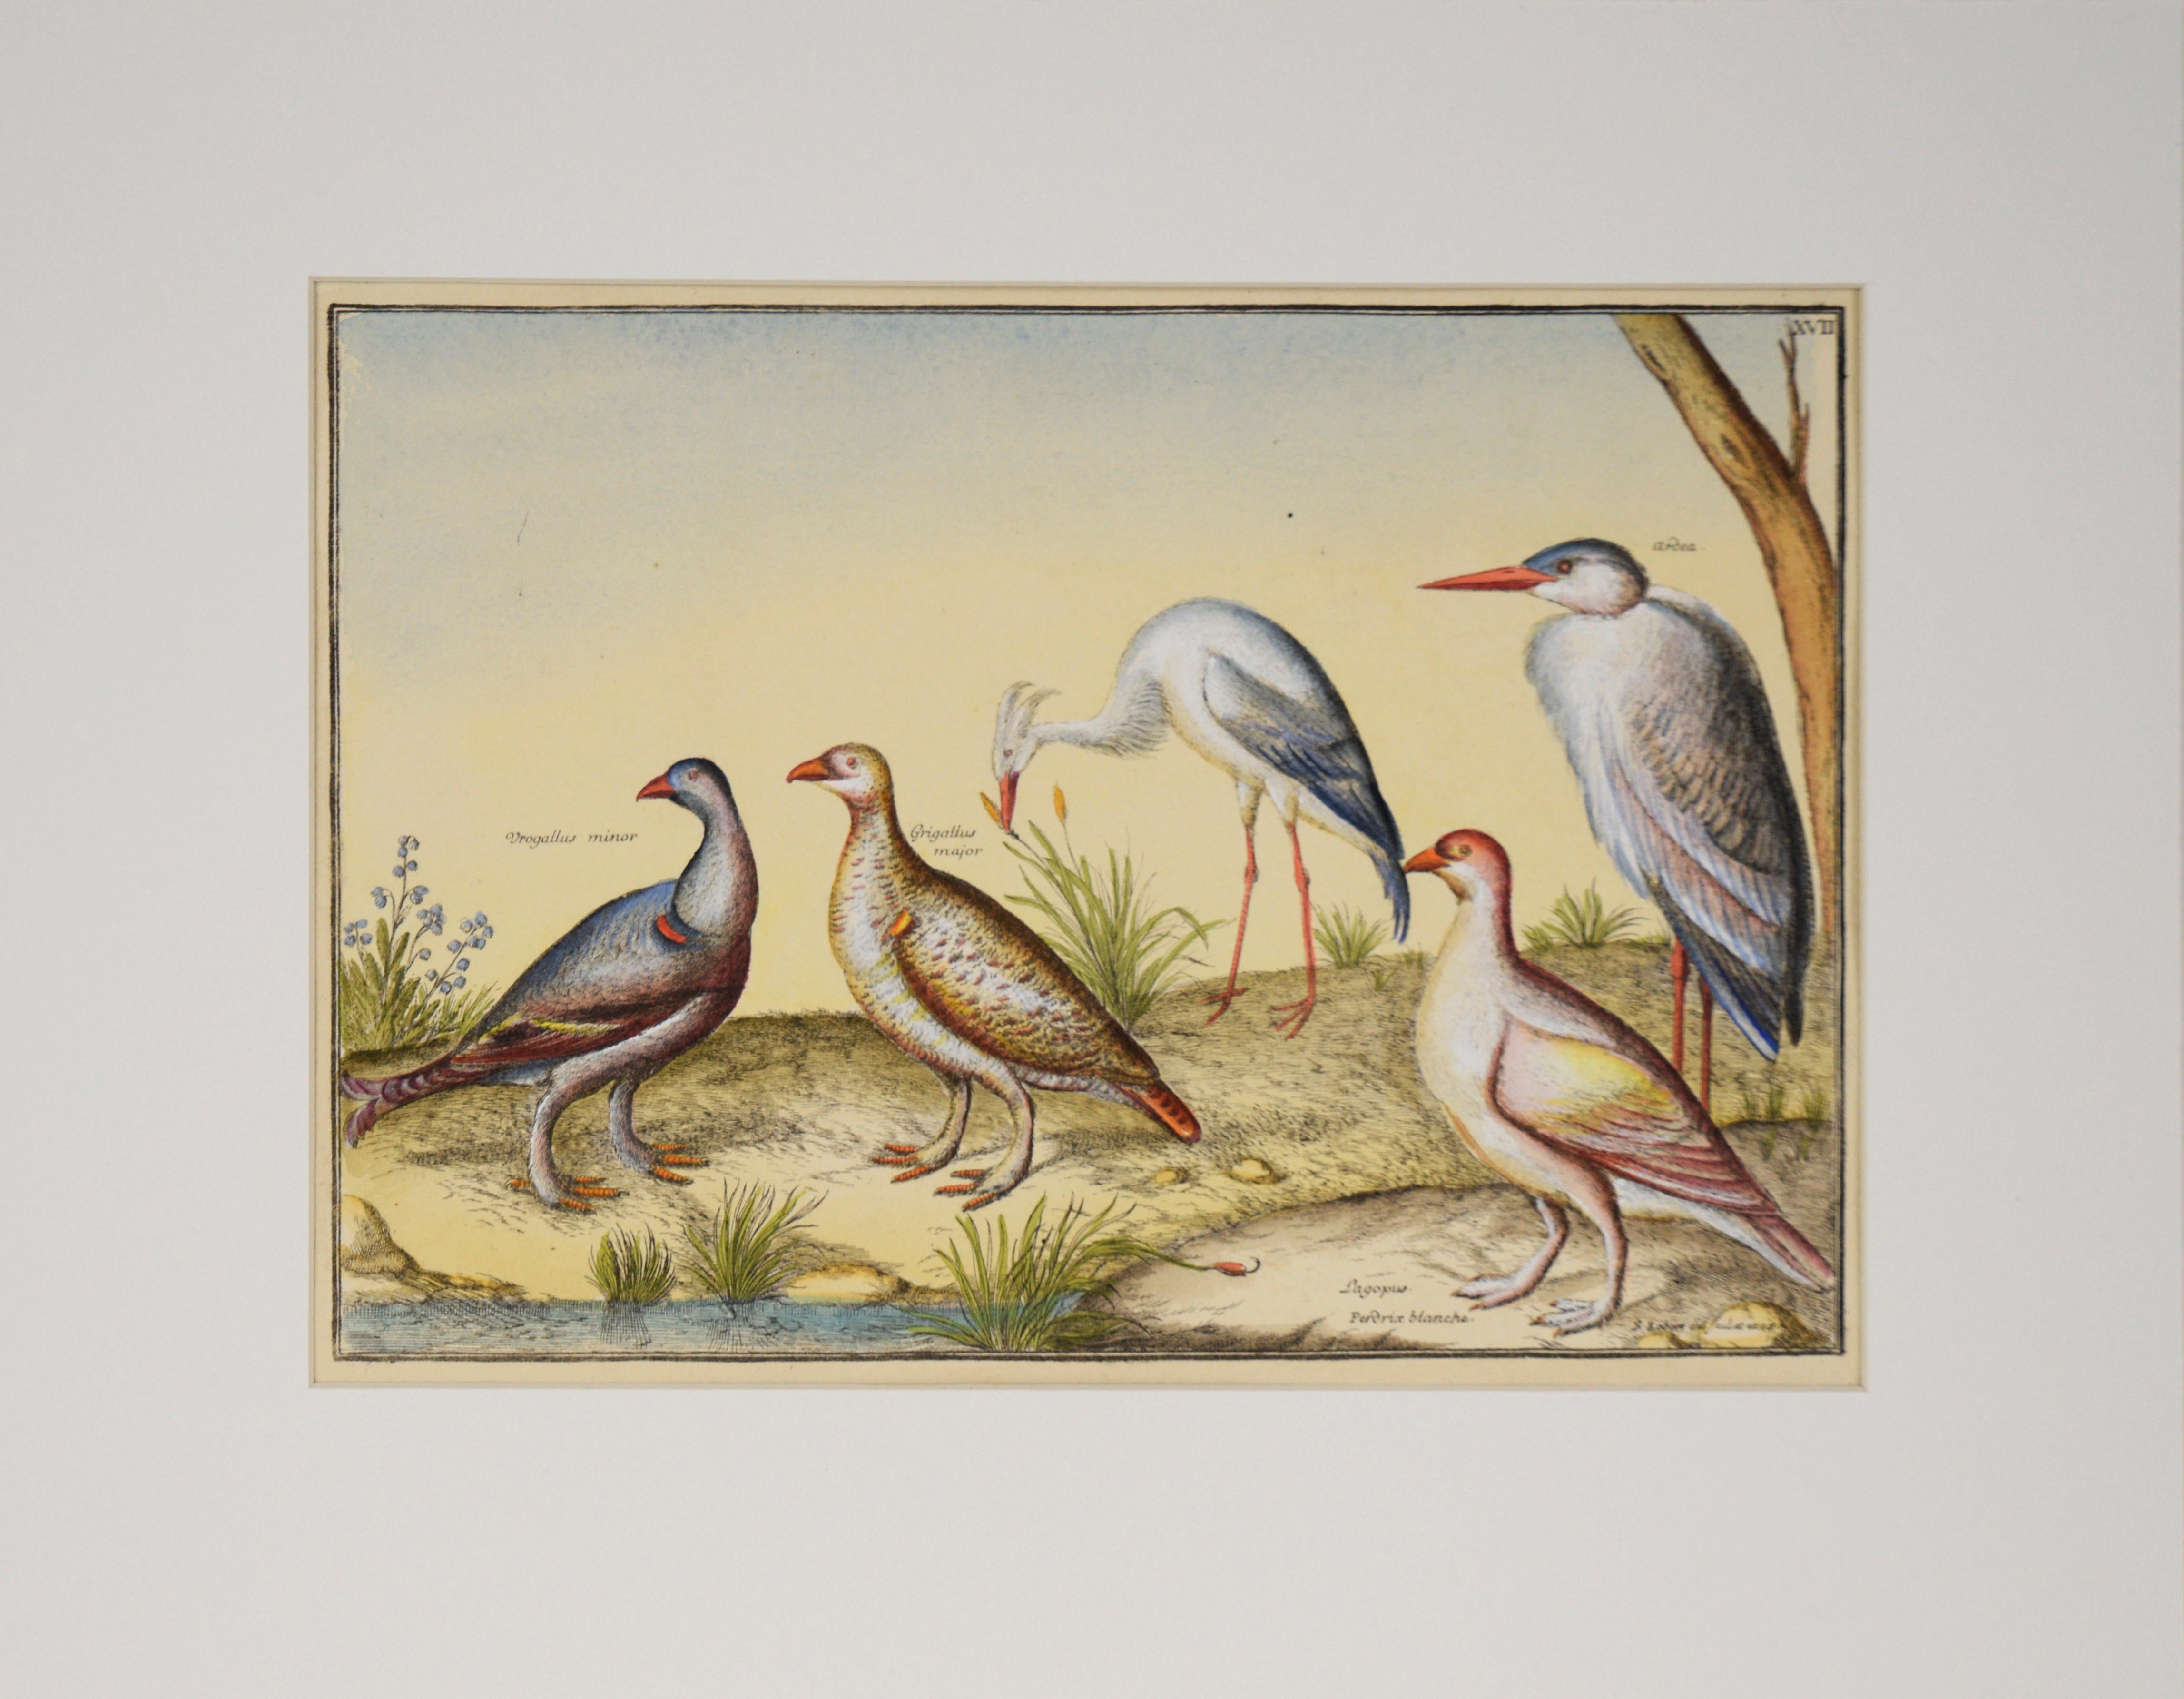 Antique Birds - 17th Century Hand Watercolor Engraving